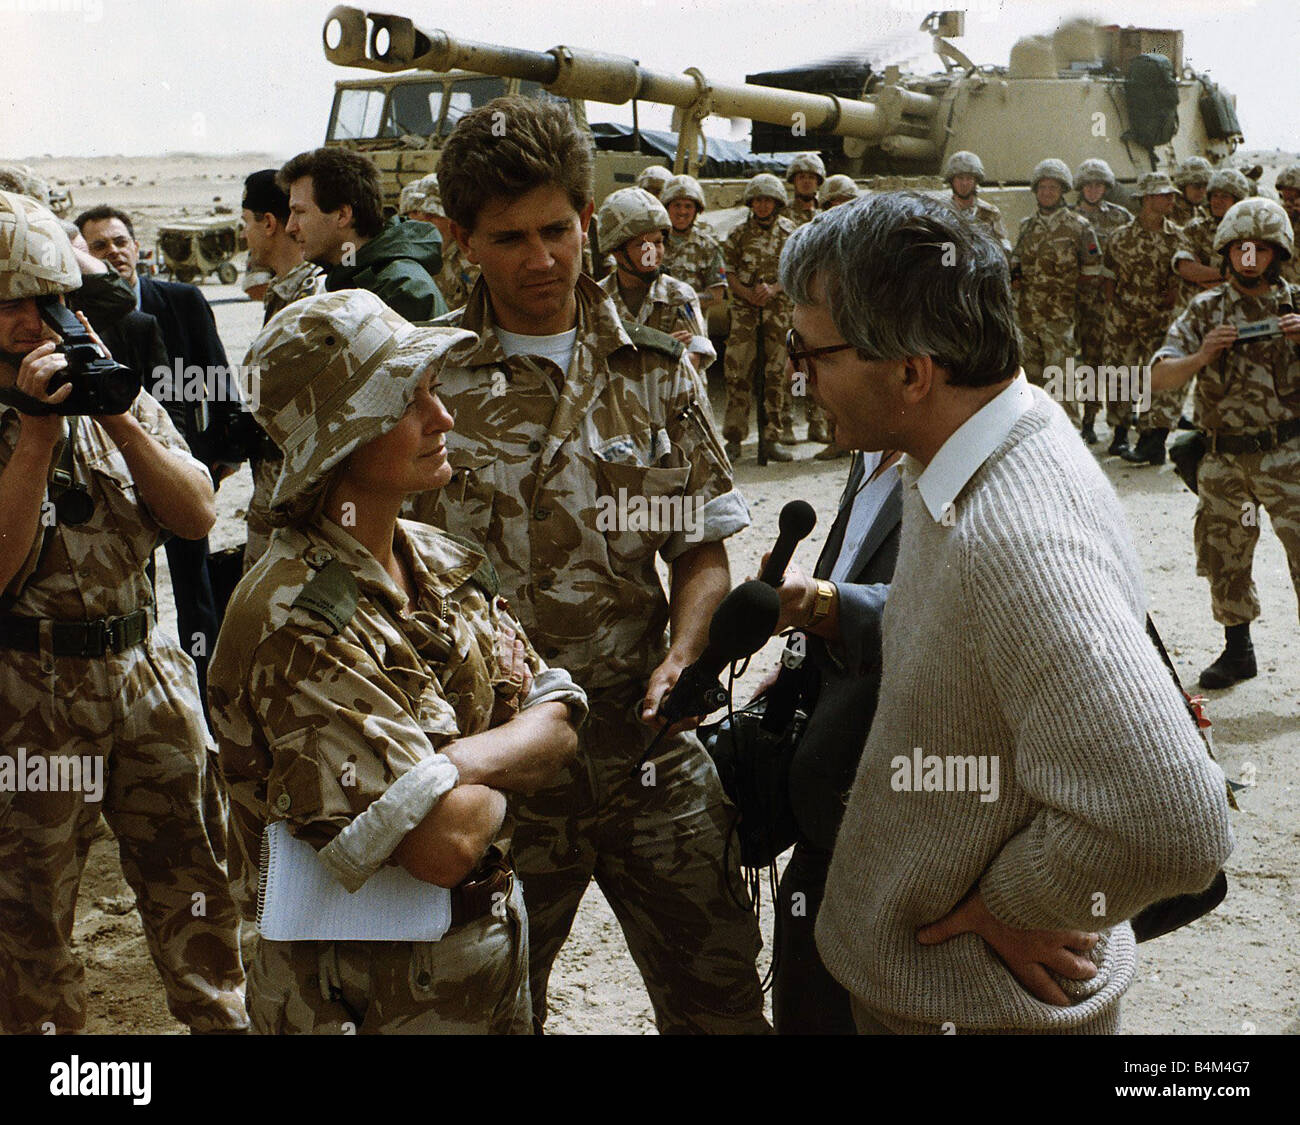 Le Premier ministre britannique John Major vu ici en cours d'un entretien avec le chef de la BBC Kate Adie corrospondent étrangers après la visite de troupes dans le désert pendant la construction de l'opération Tempête du désert 1991 Banque D'Images